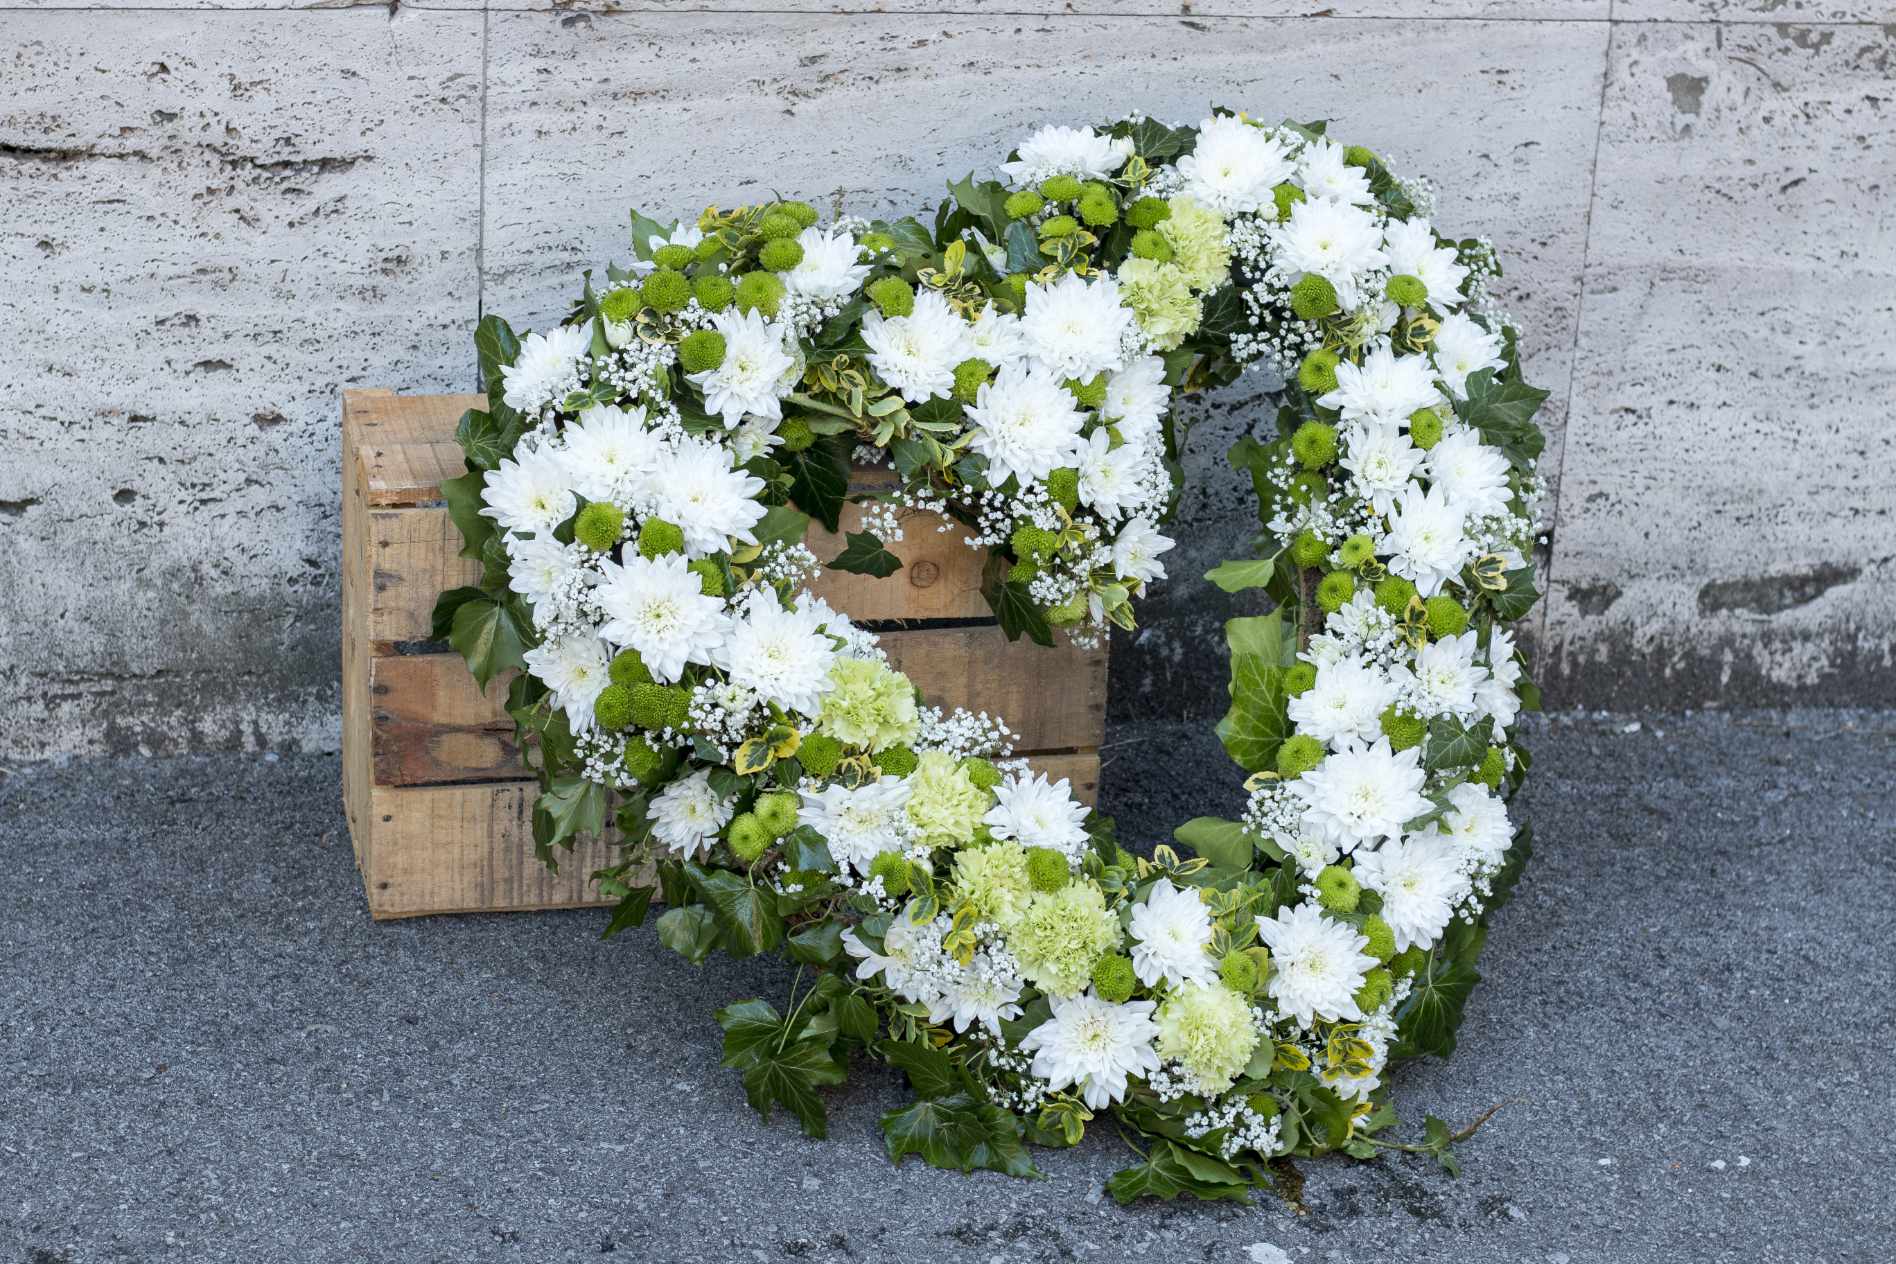 A large, white sympathy floral arrangement.